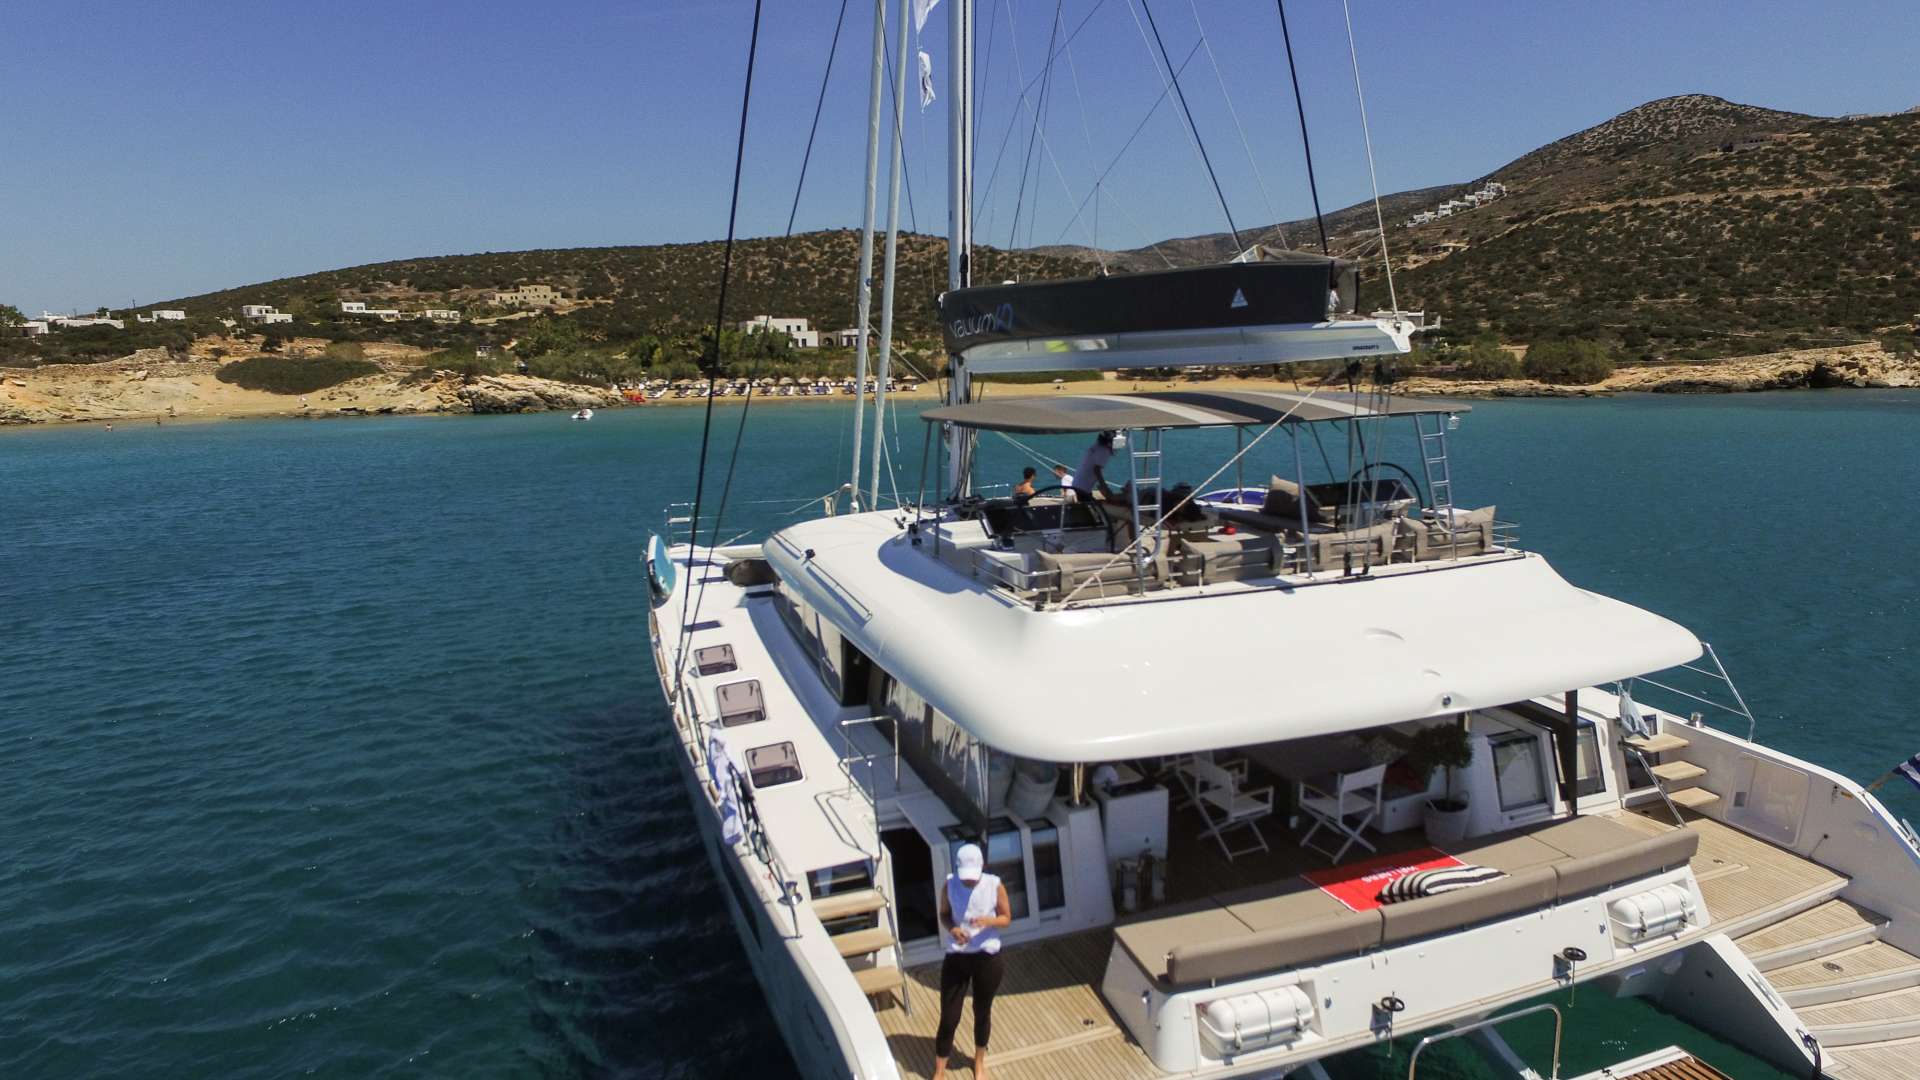 valium62 - Yacht Charter Porto Cheli & Boat hire in Greece 1